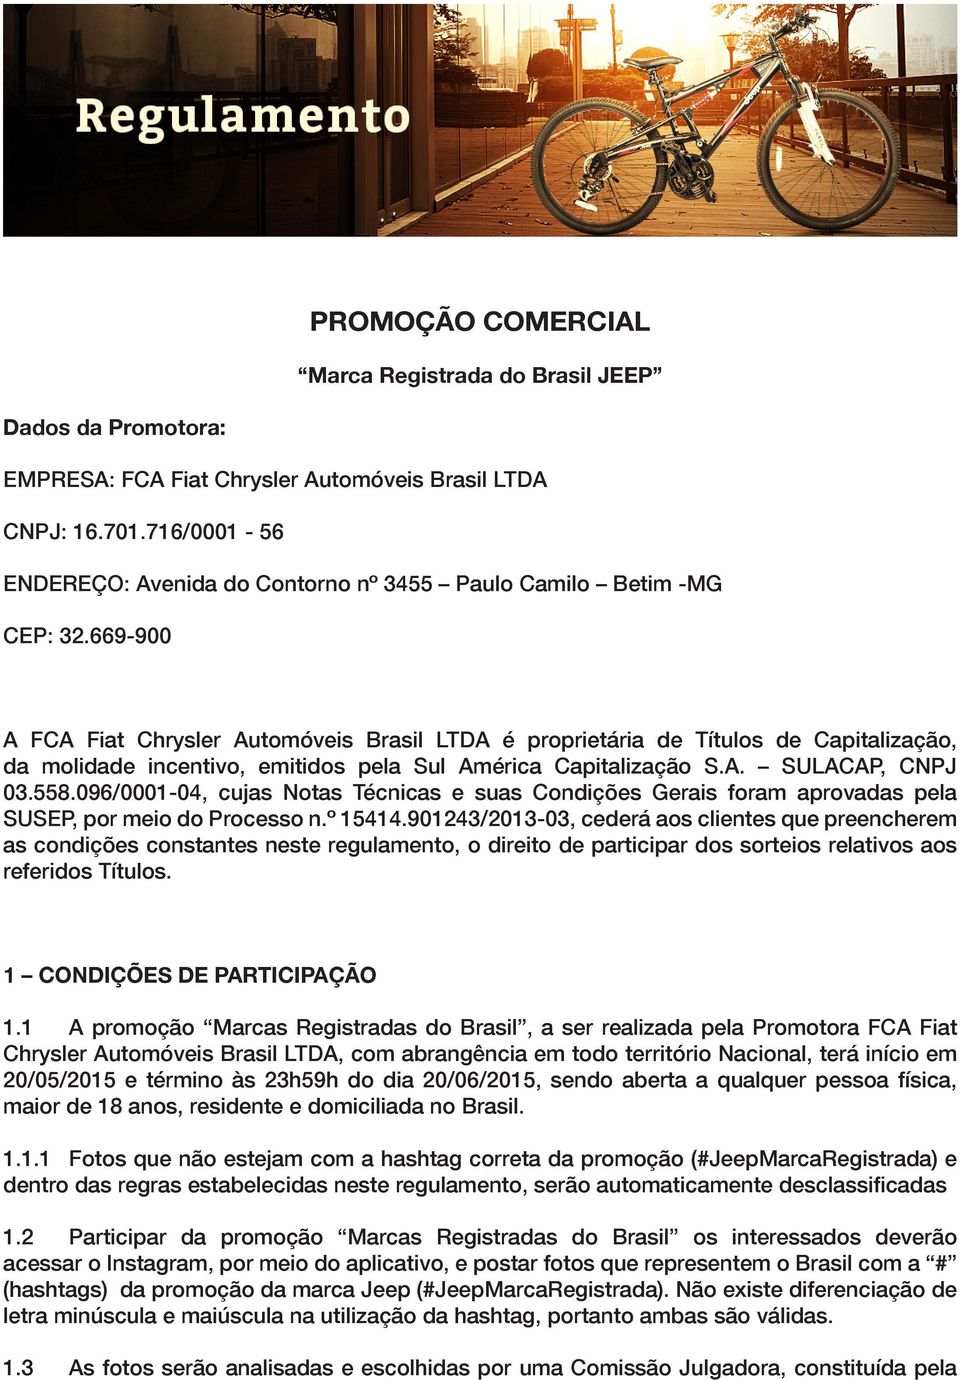 669-900 A FCA Fiat Chrysler Automóveis Brasil LTDA é proprietária de Títulos de Capitalização, da molidade incentivo, emitidos pela Sul América Capitalização S.A. SULACAP, CNPJ 03.558.